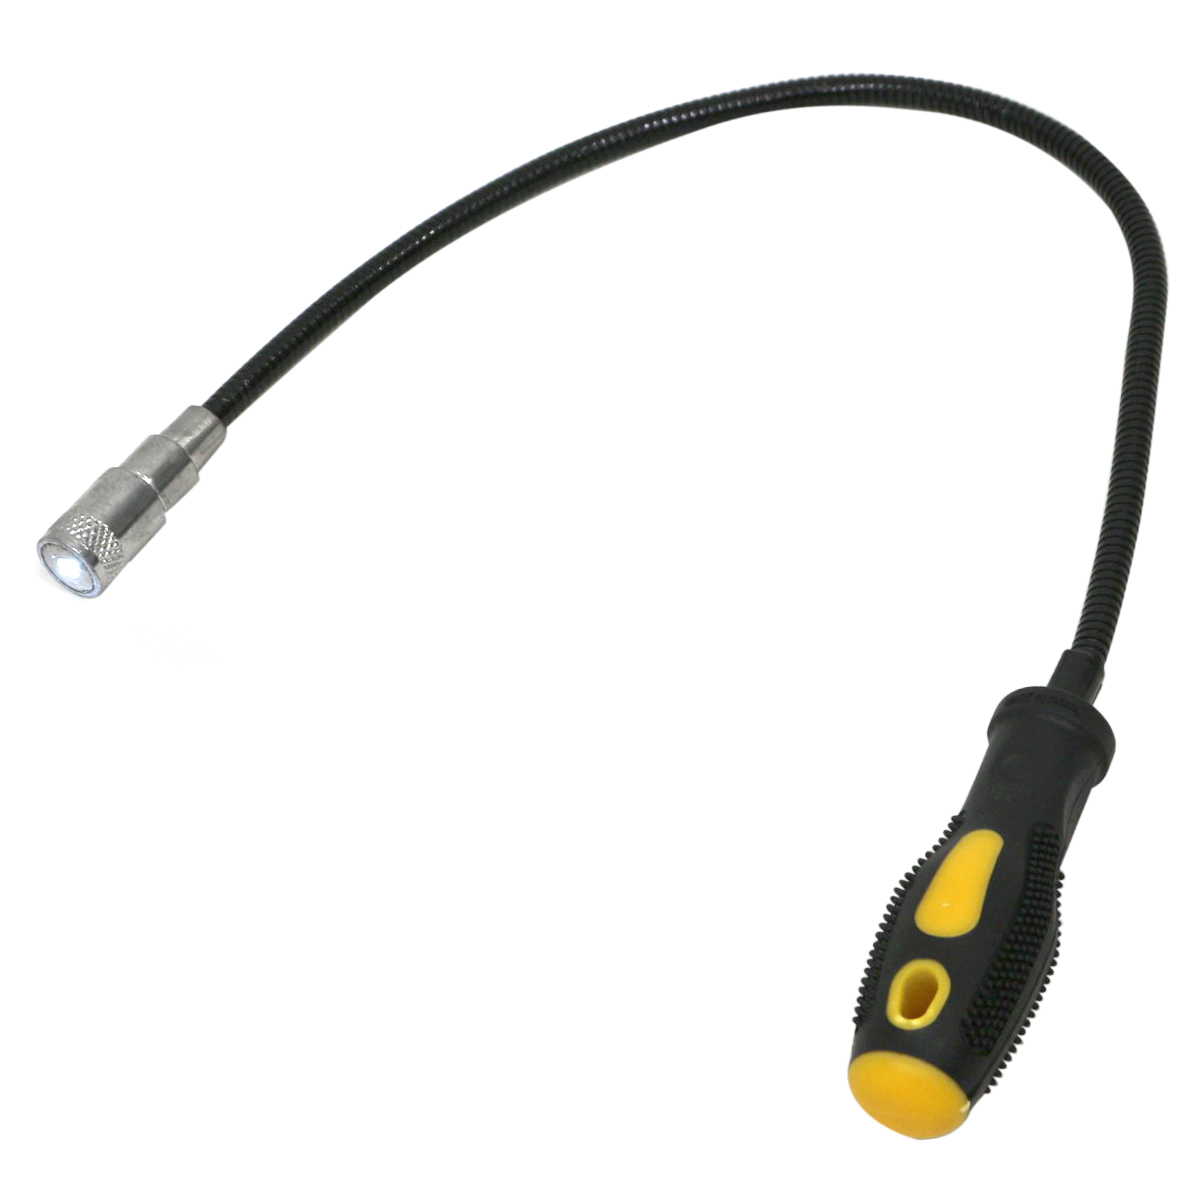 マグネット ピックアップツール フレキシブル マグネットペン LED 照明付き 強力磁石 ネジ拾い 落ちたネジも楽々キャッチ_画像2